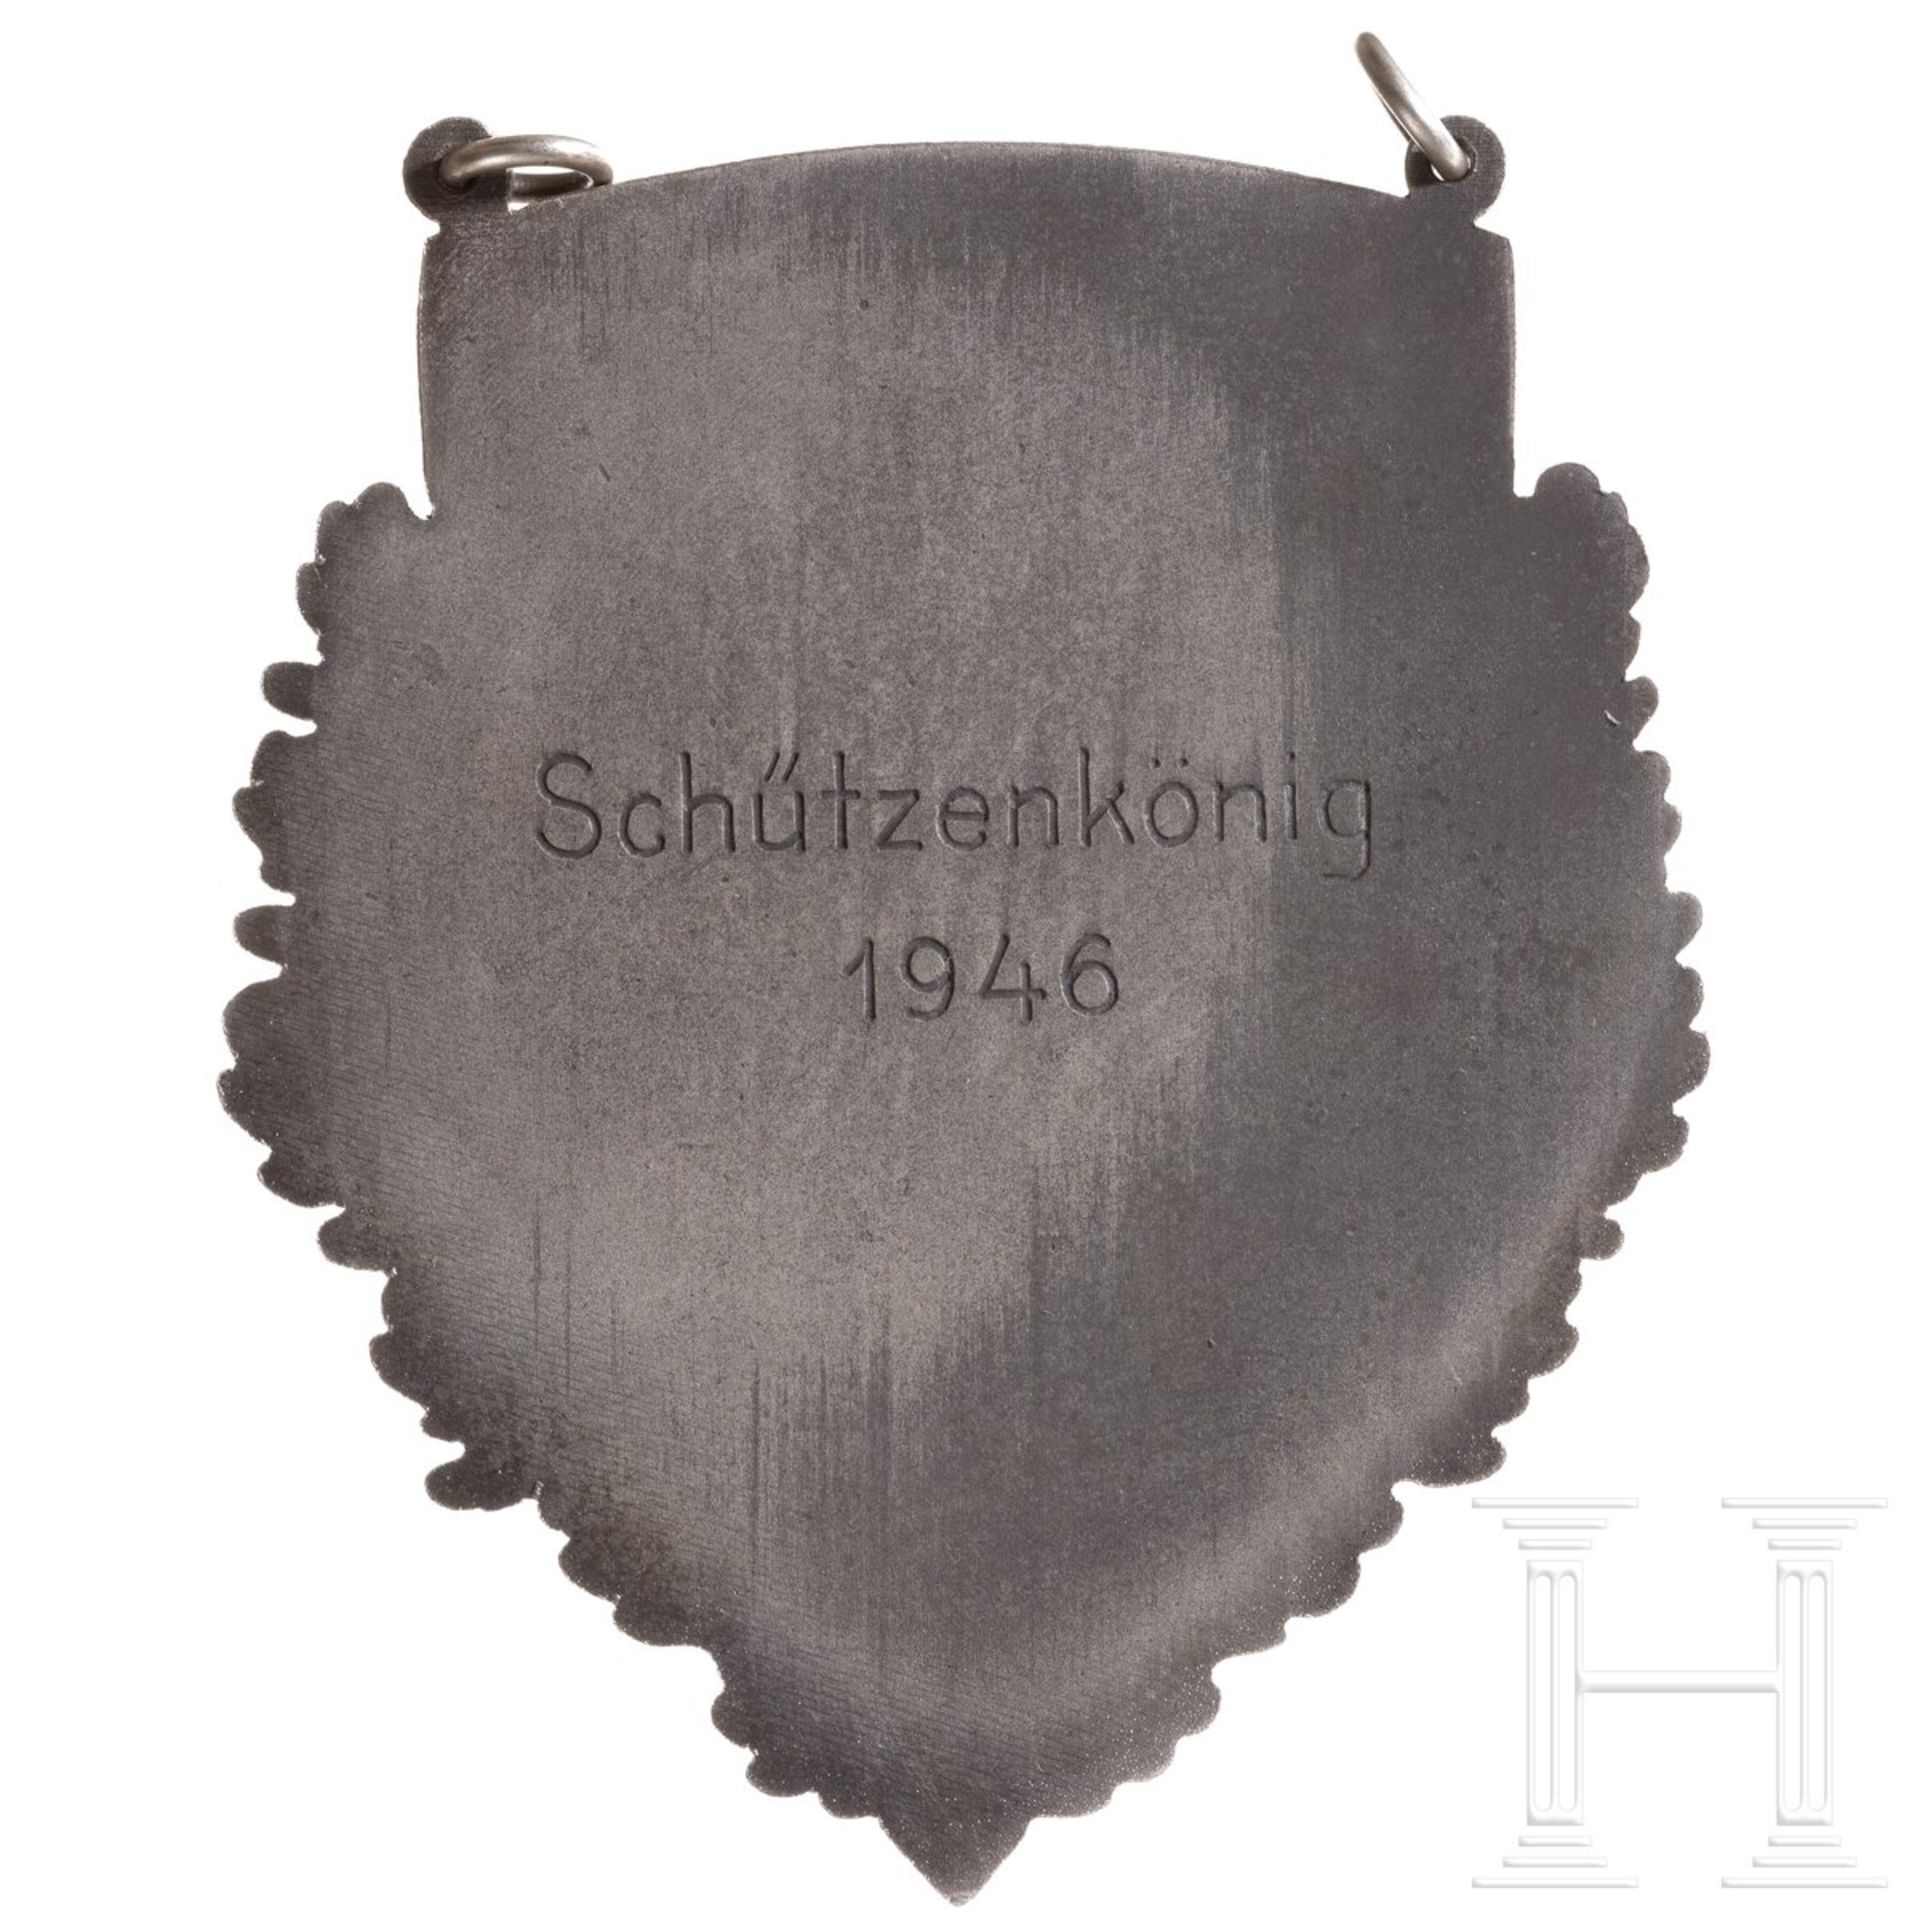 Schützenkettenanhänger "Generalgouvernement - Schützenkönig 1946" - Image 2 of 4